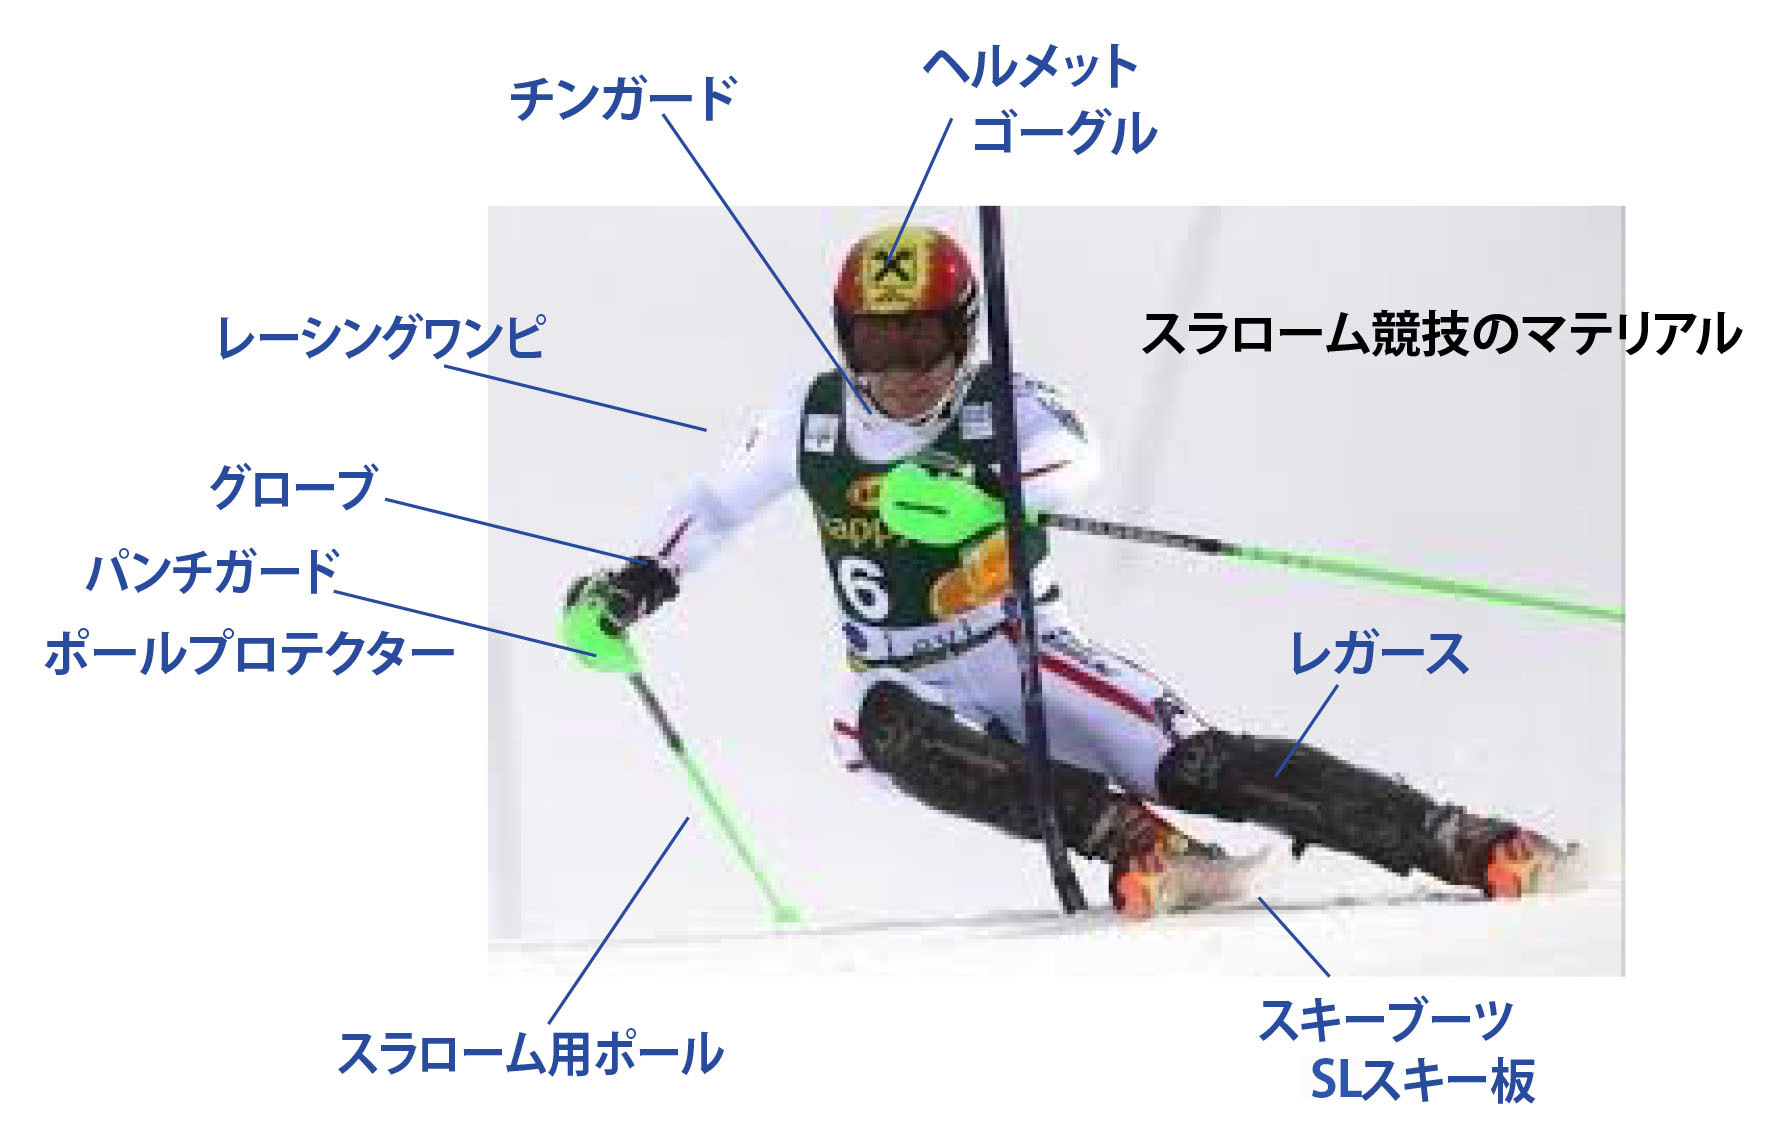 ちびっこレーサーのマテリアル 道具 静岡ジュニアアルペンレーサーたちの挑戦